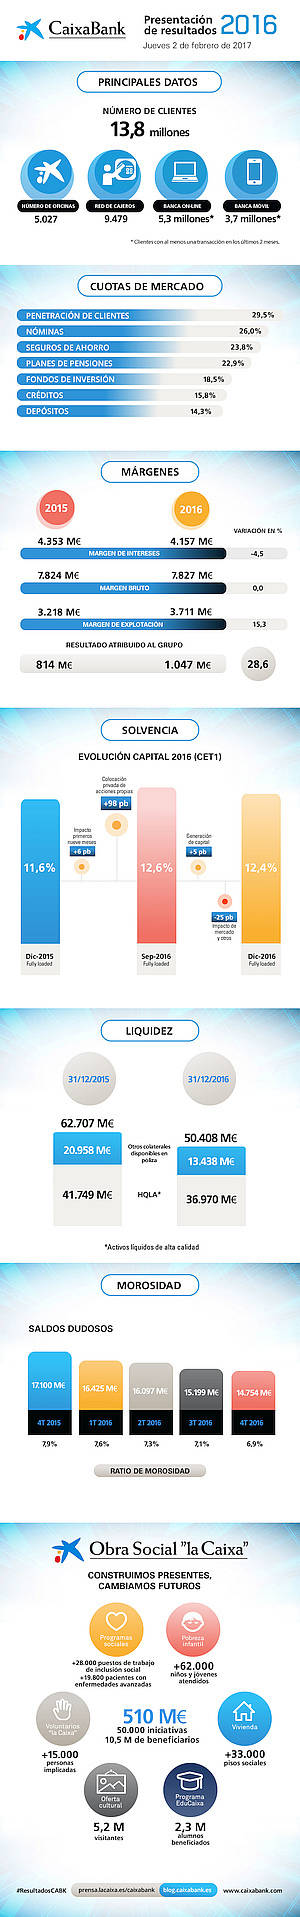 CaixaBank gana un 28,6% más, incrementa los recursos de clientes un 2,5% y reduce la morosidad hasta el 6,9%